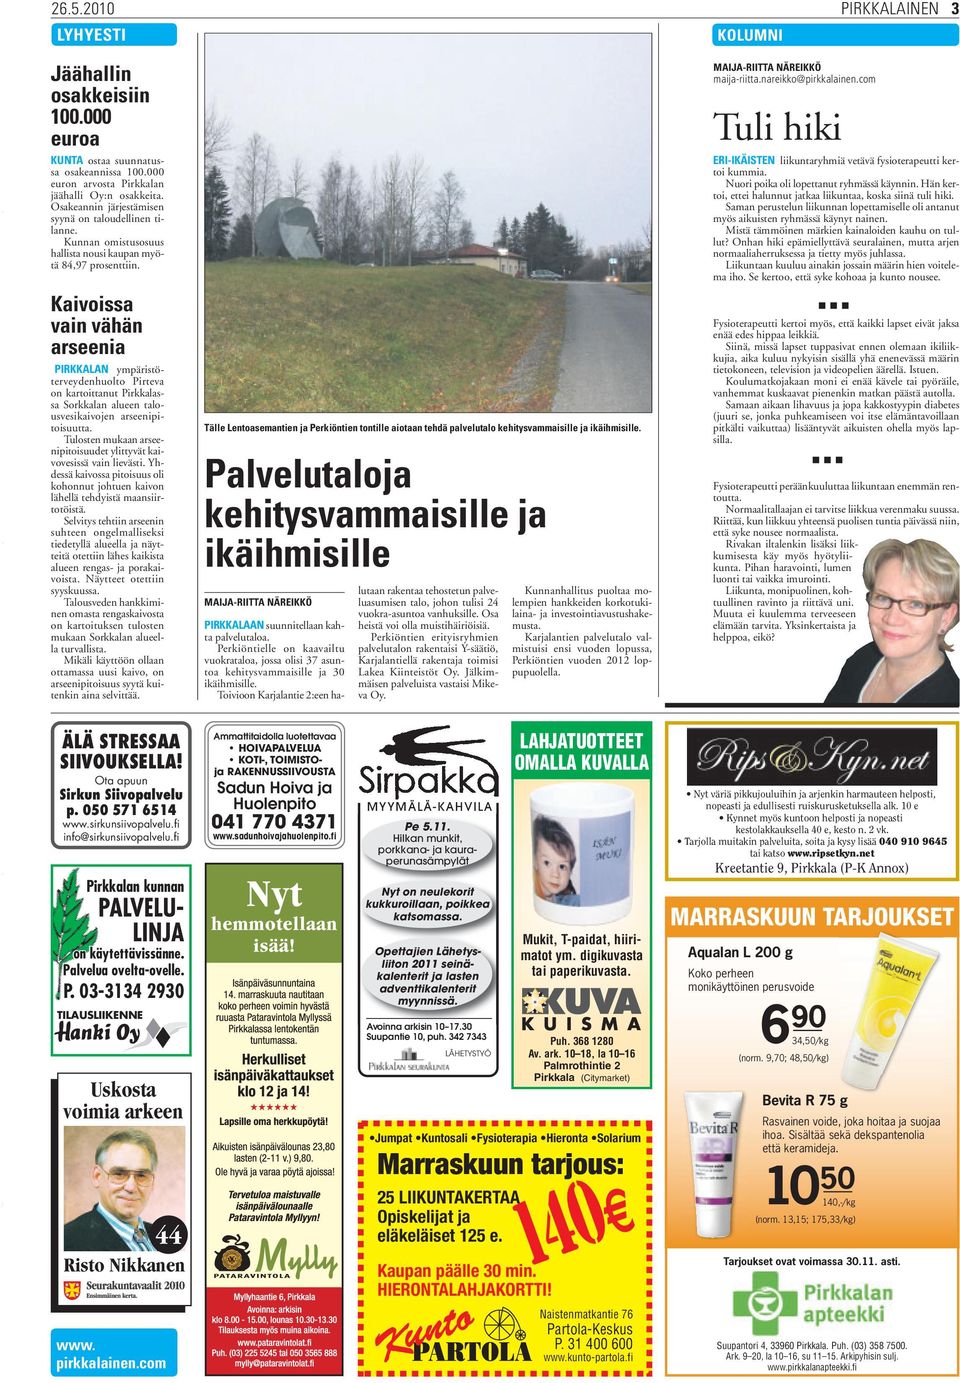 Kaivoissa vain vähän arseenia PIRKKALAN ympäristöterveydenhuolto Pirteva on kartoittanut Pirkkalassa Sorkkalan alueen talousvesikaivojen arseenipitoisuutta.